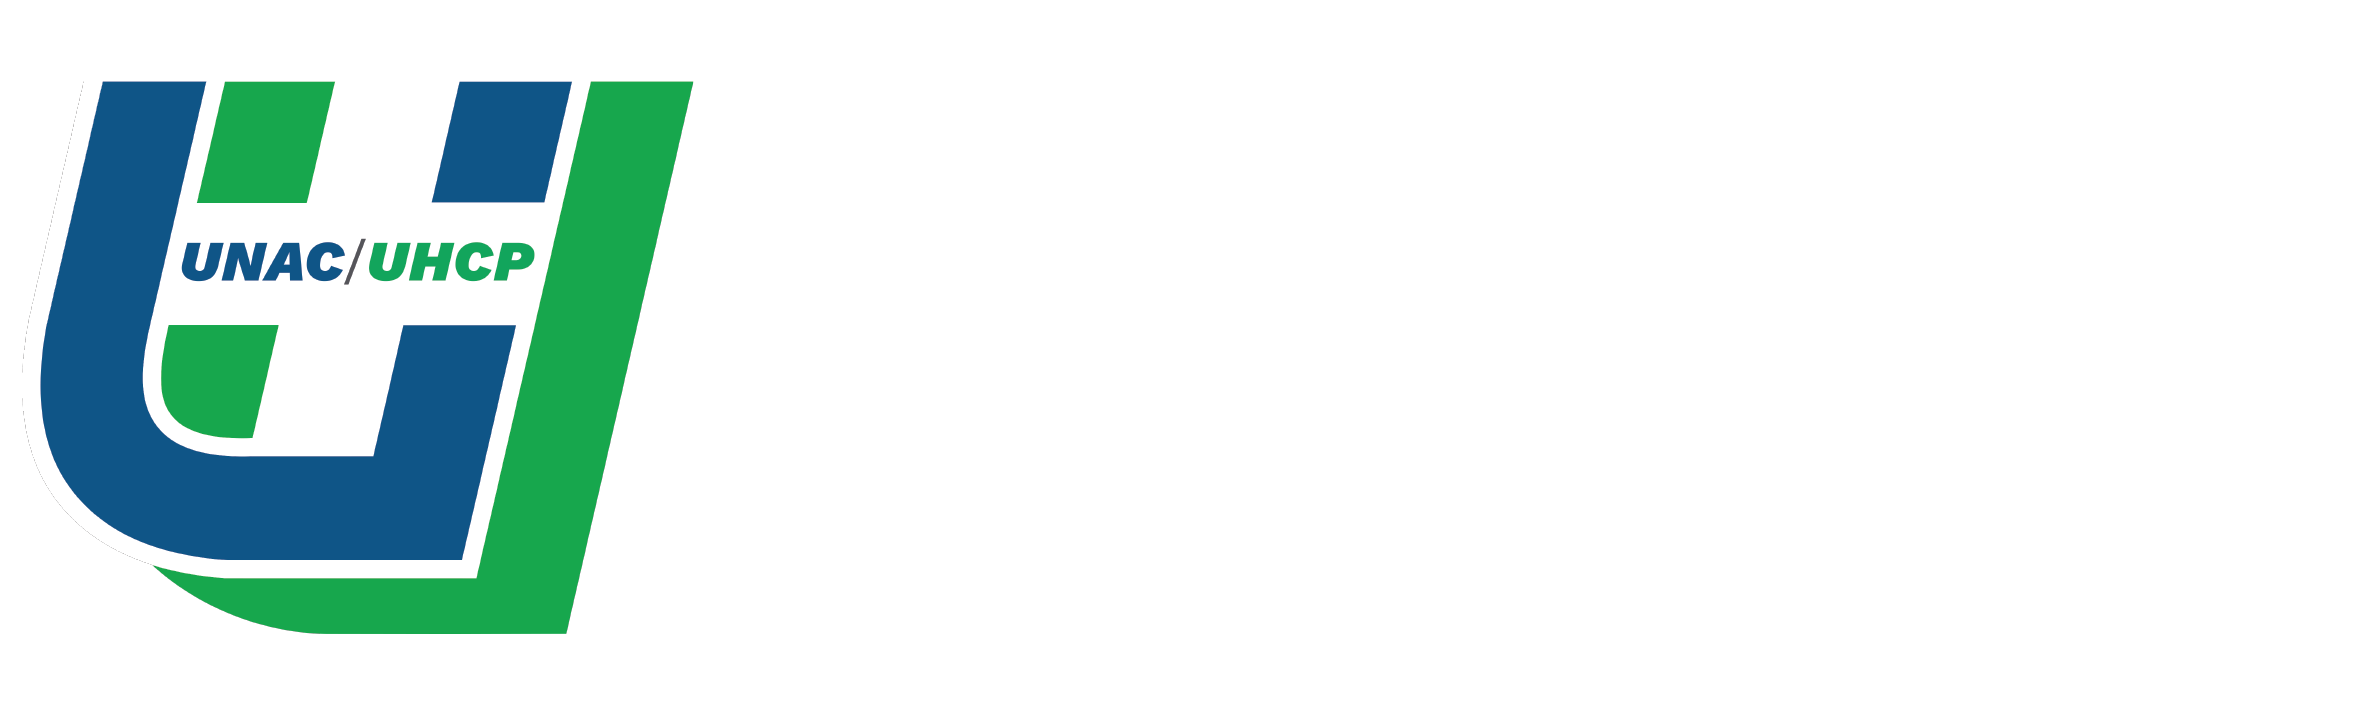 UNAC/UHCP